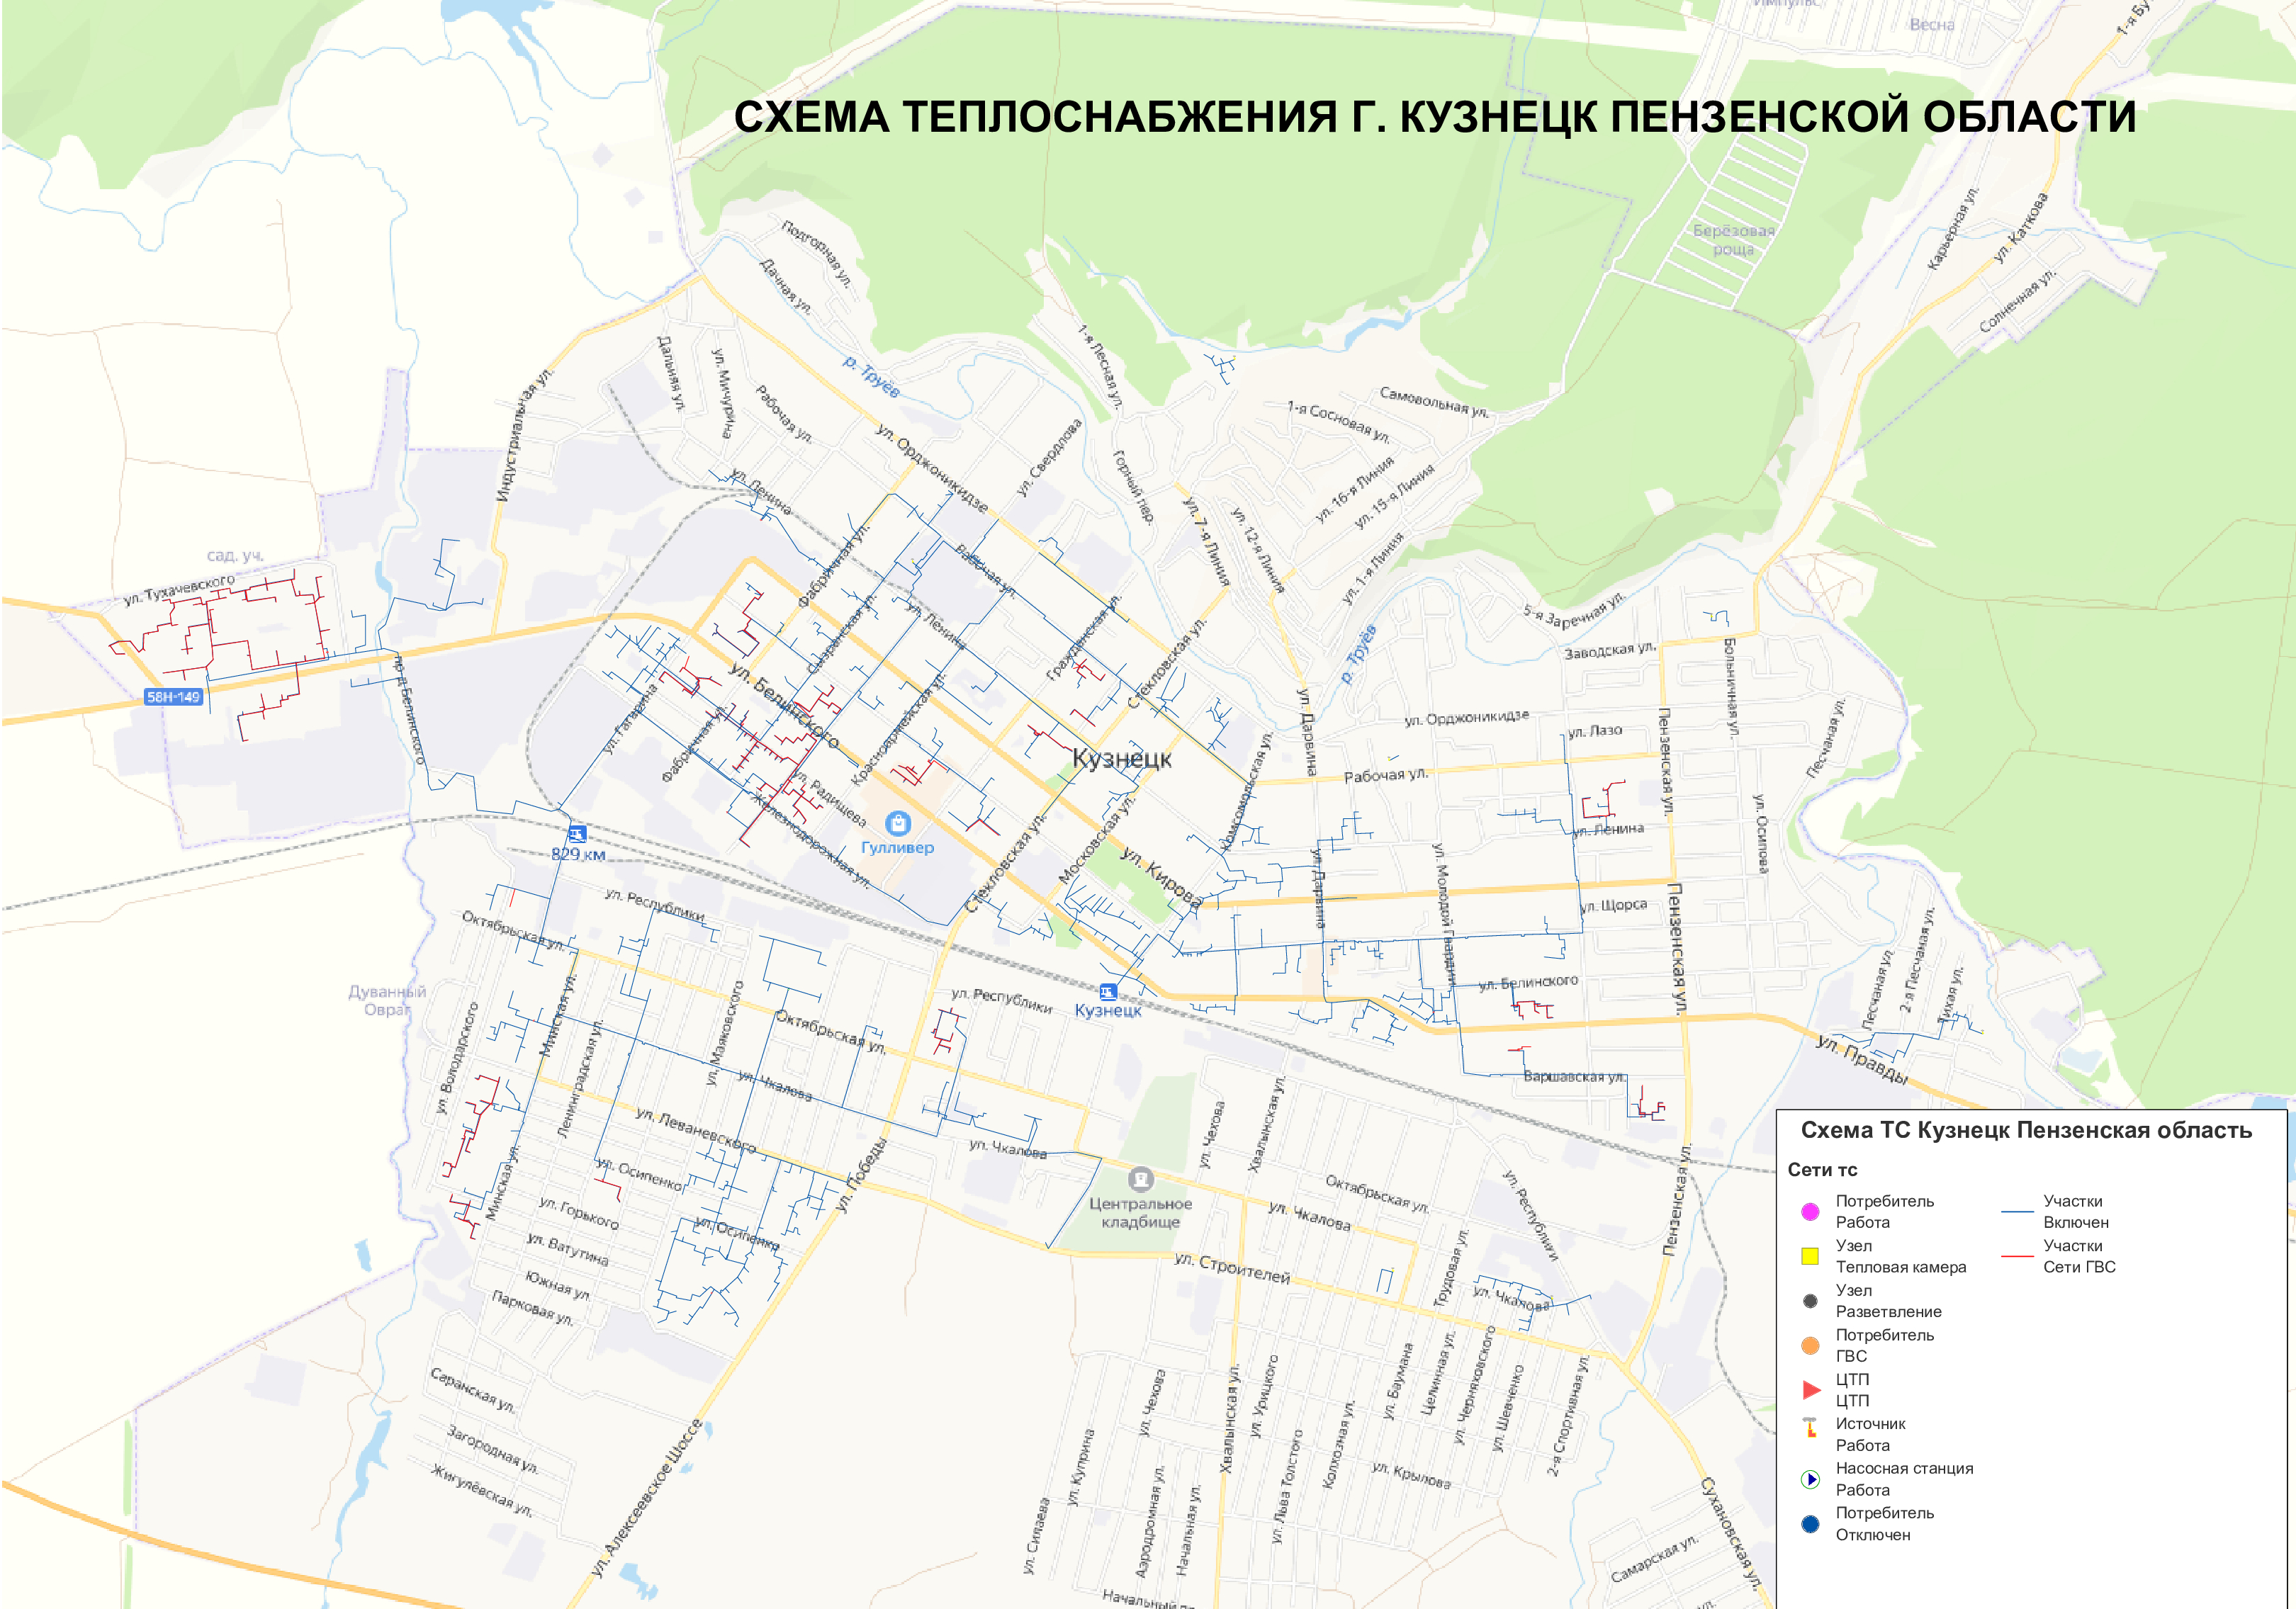 Отдел городского хозяйства уведомляет о сборе замечаний и предложений по проекту схемы теплоснабжения города Кузнецка